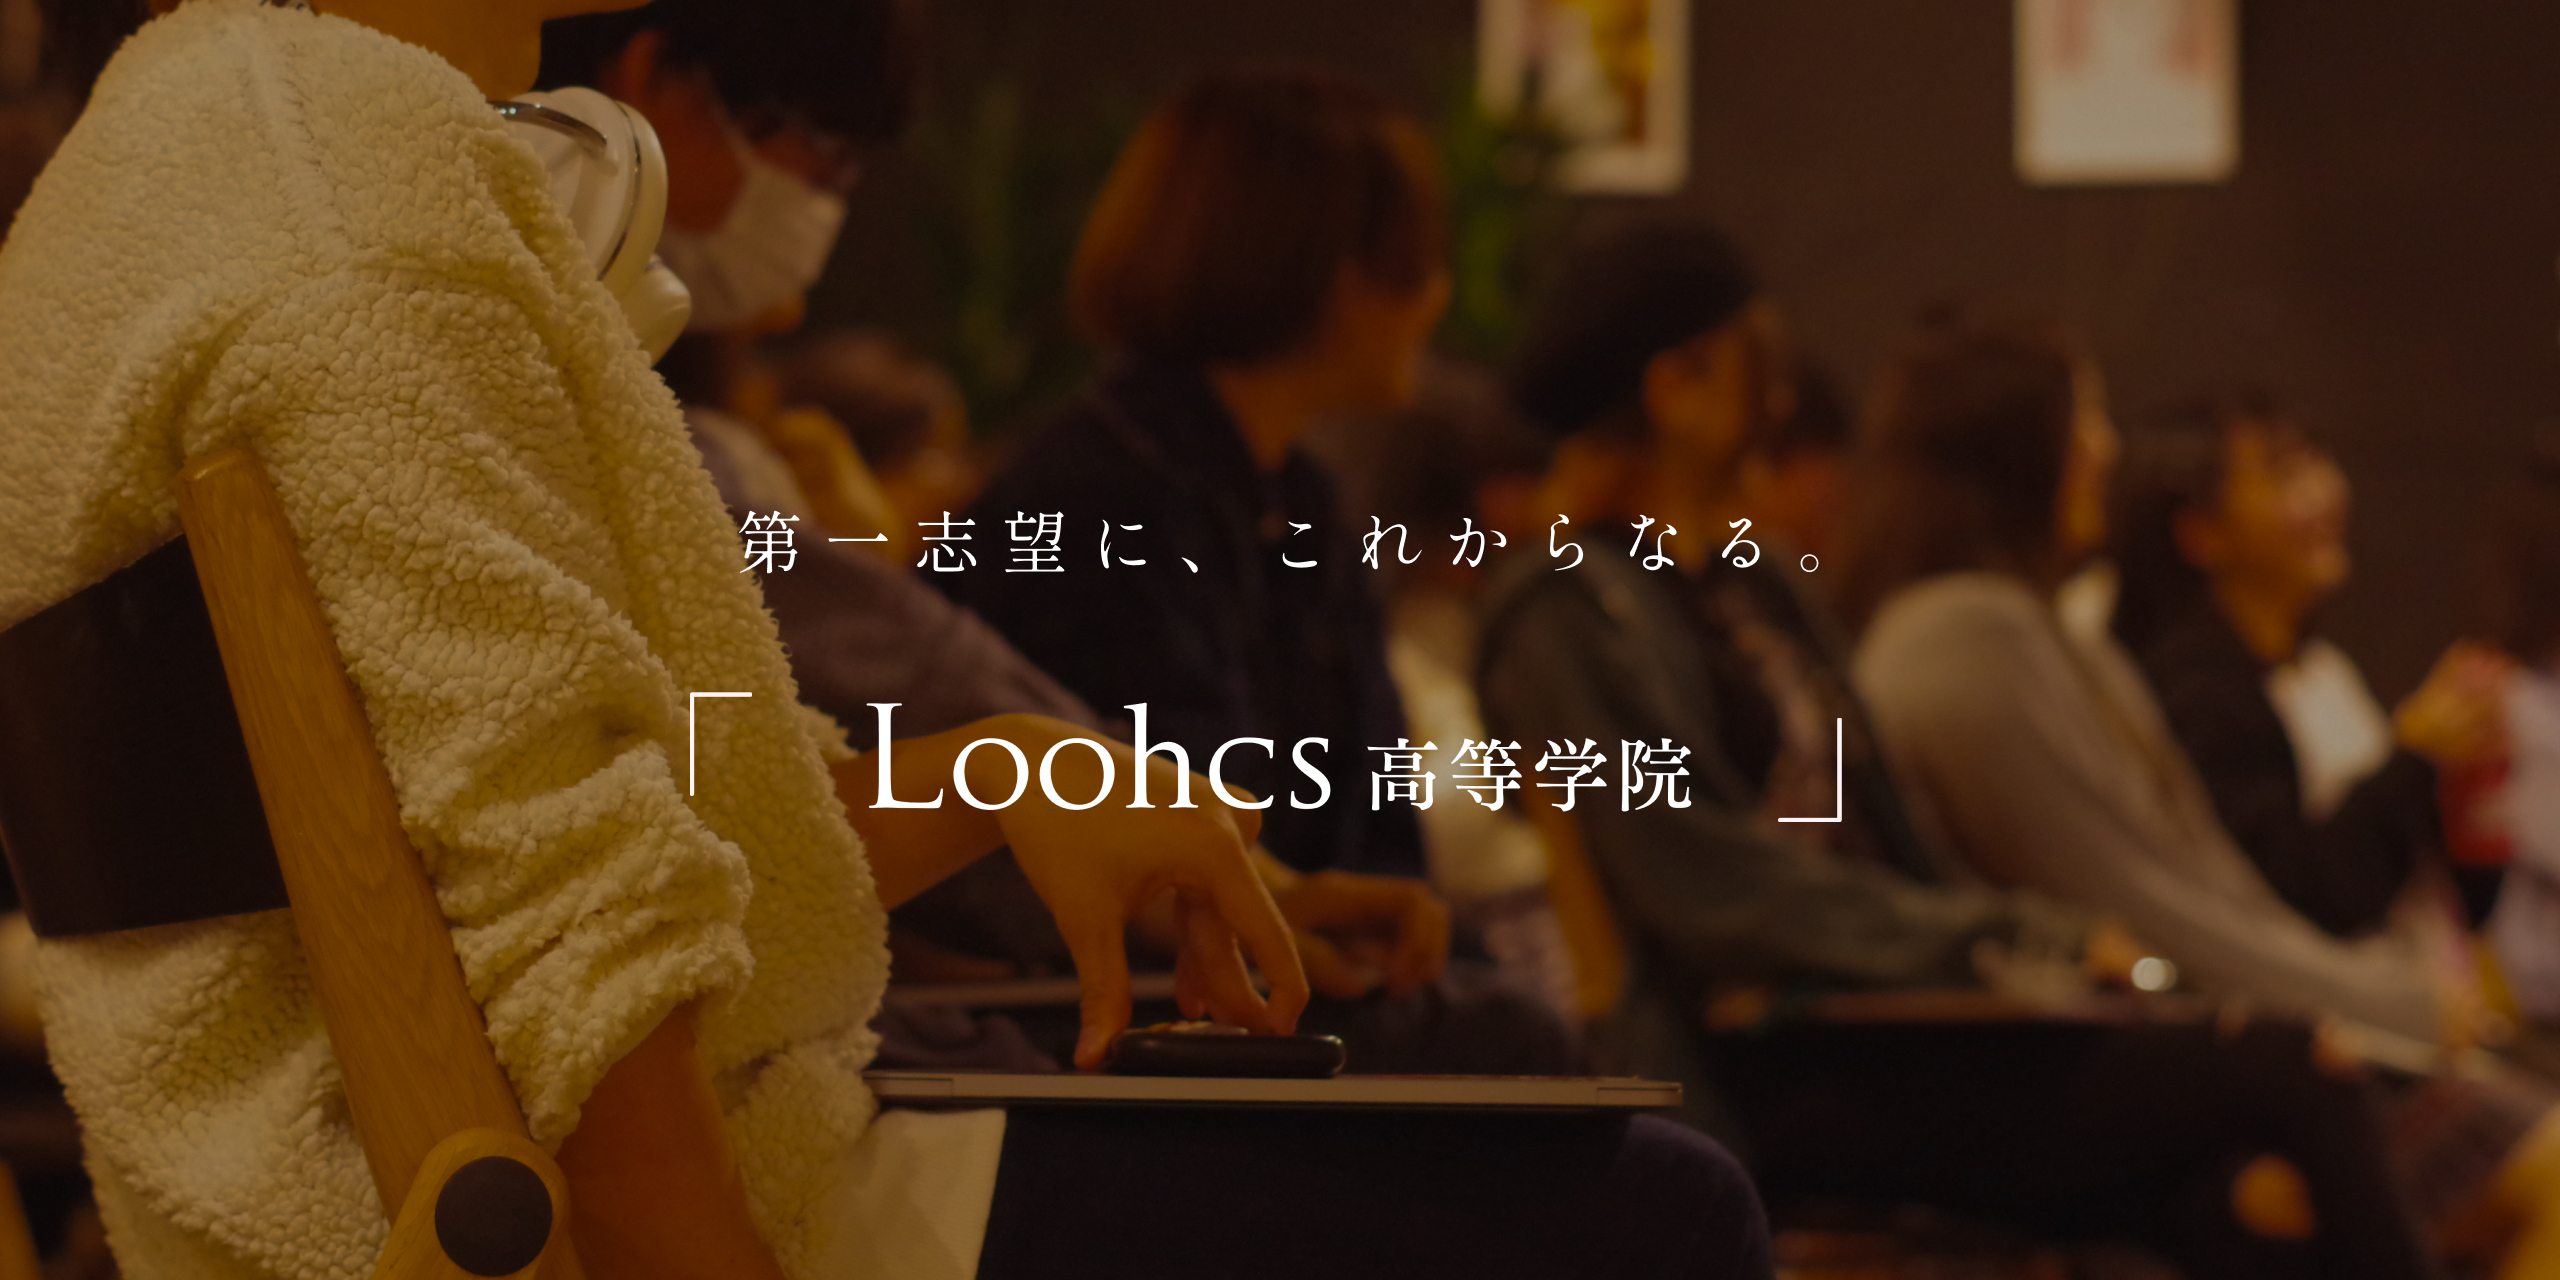 第一志望、これからなる 「Loochs高等学院」